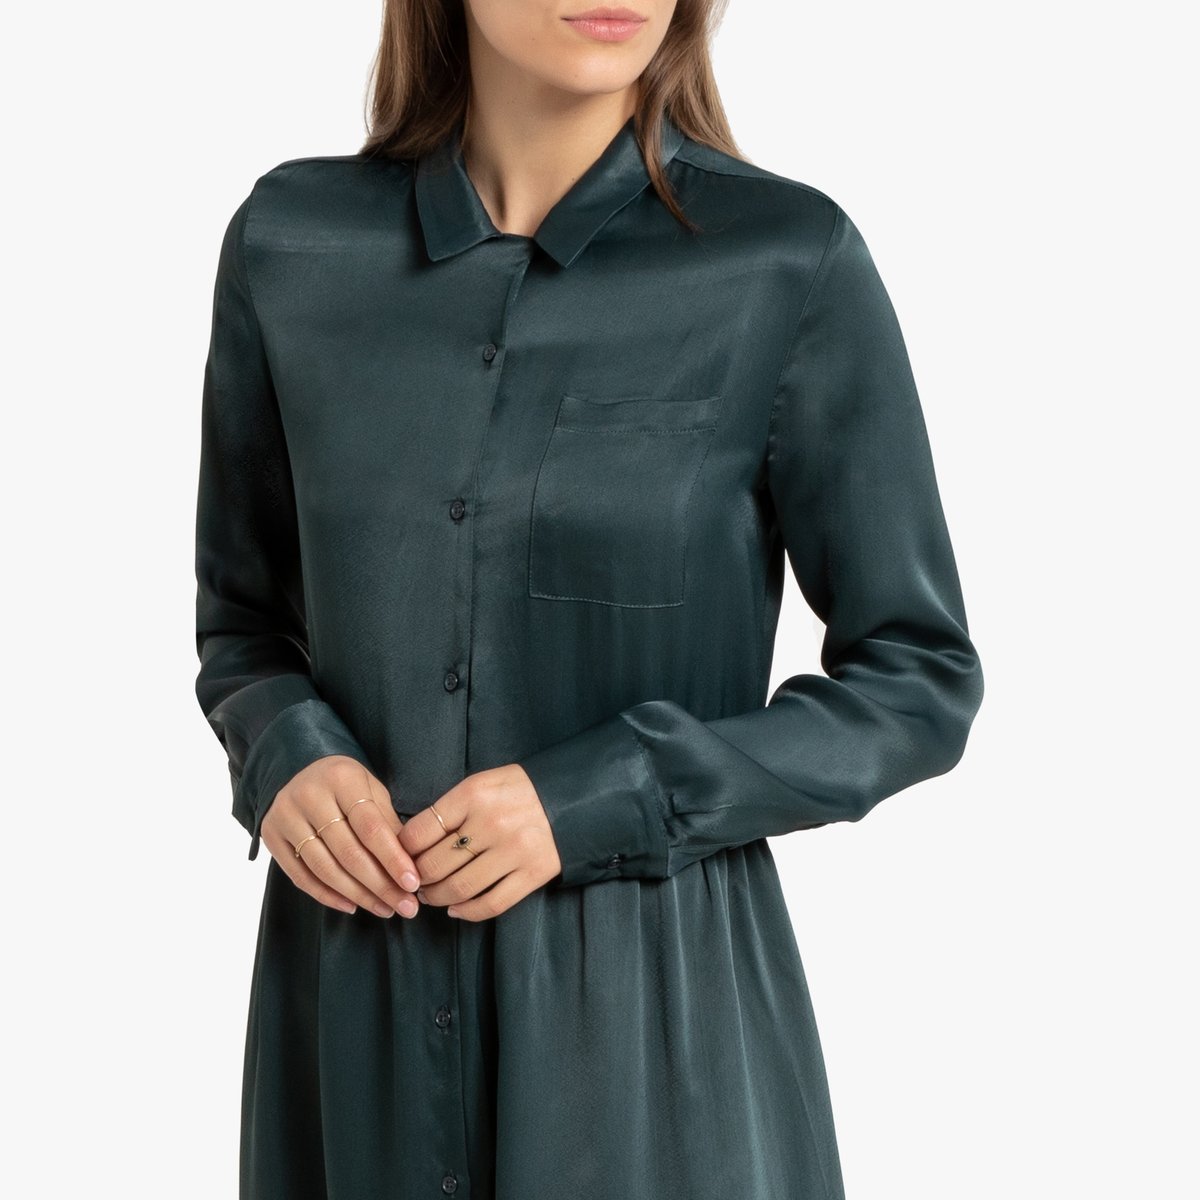 Платье-рубашка La Redoute Миди с длинными рукавами 42 (FR) - 48 (RUS) зеленый, размер 42 (FR) - 48 (RUS) Миди с длинными рукавами 42 (FR) - 48 (RUS) зеленый - фото 2